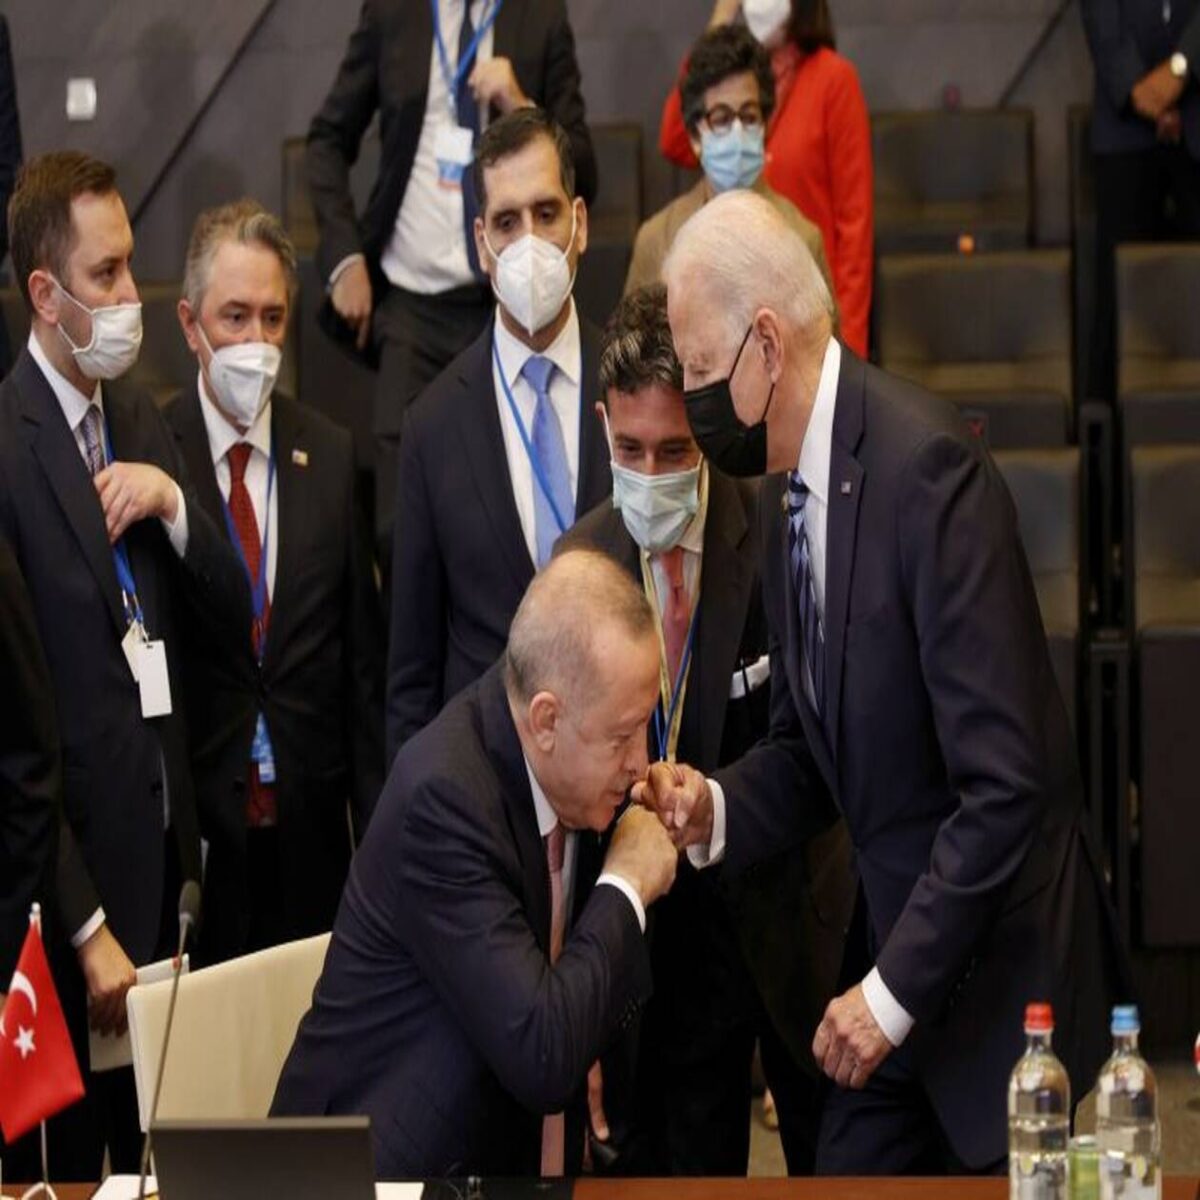 Σύνοδος ΝΑΤΟ: Ο Ερντογάν «φίλησε το χέρι» του Μπάιντεν και έγινε viral